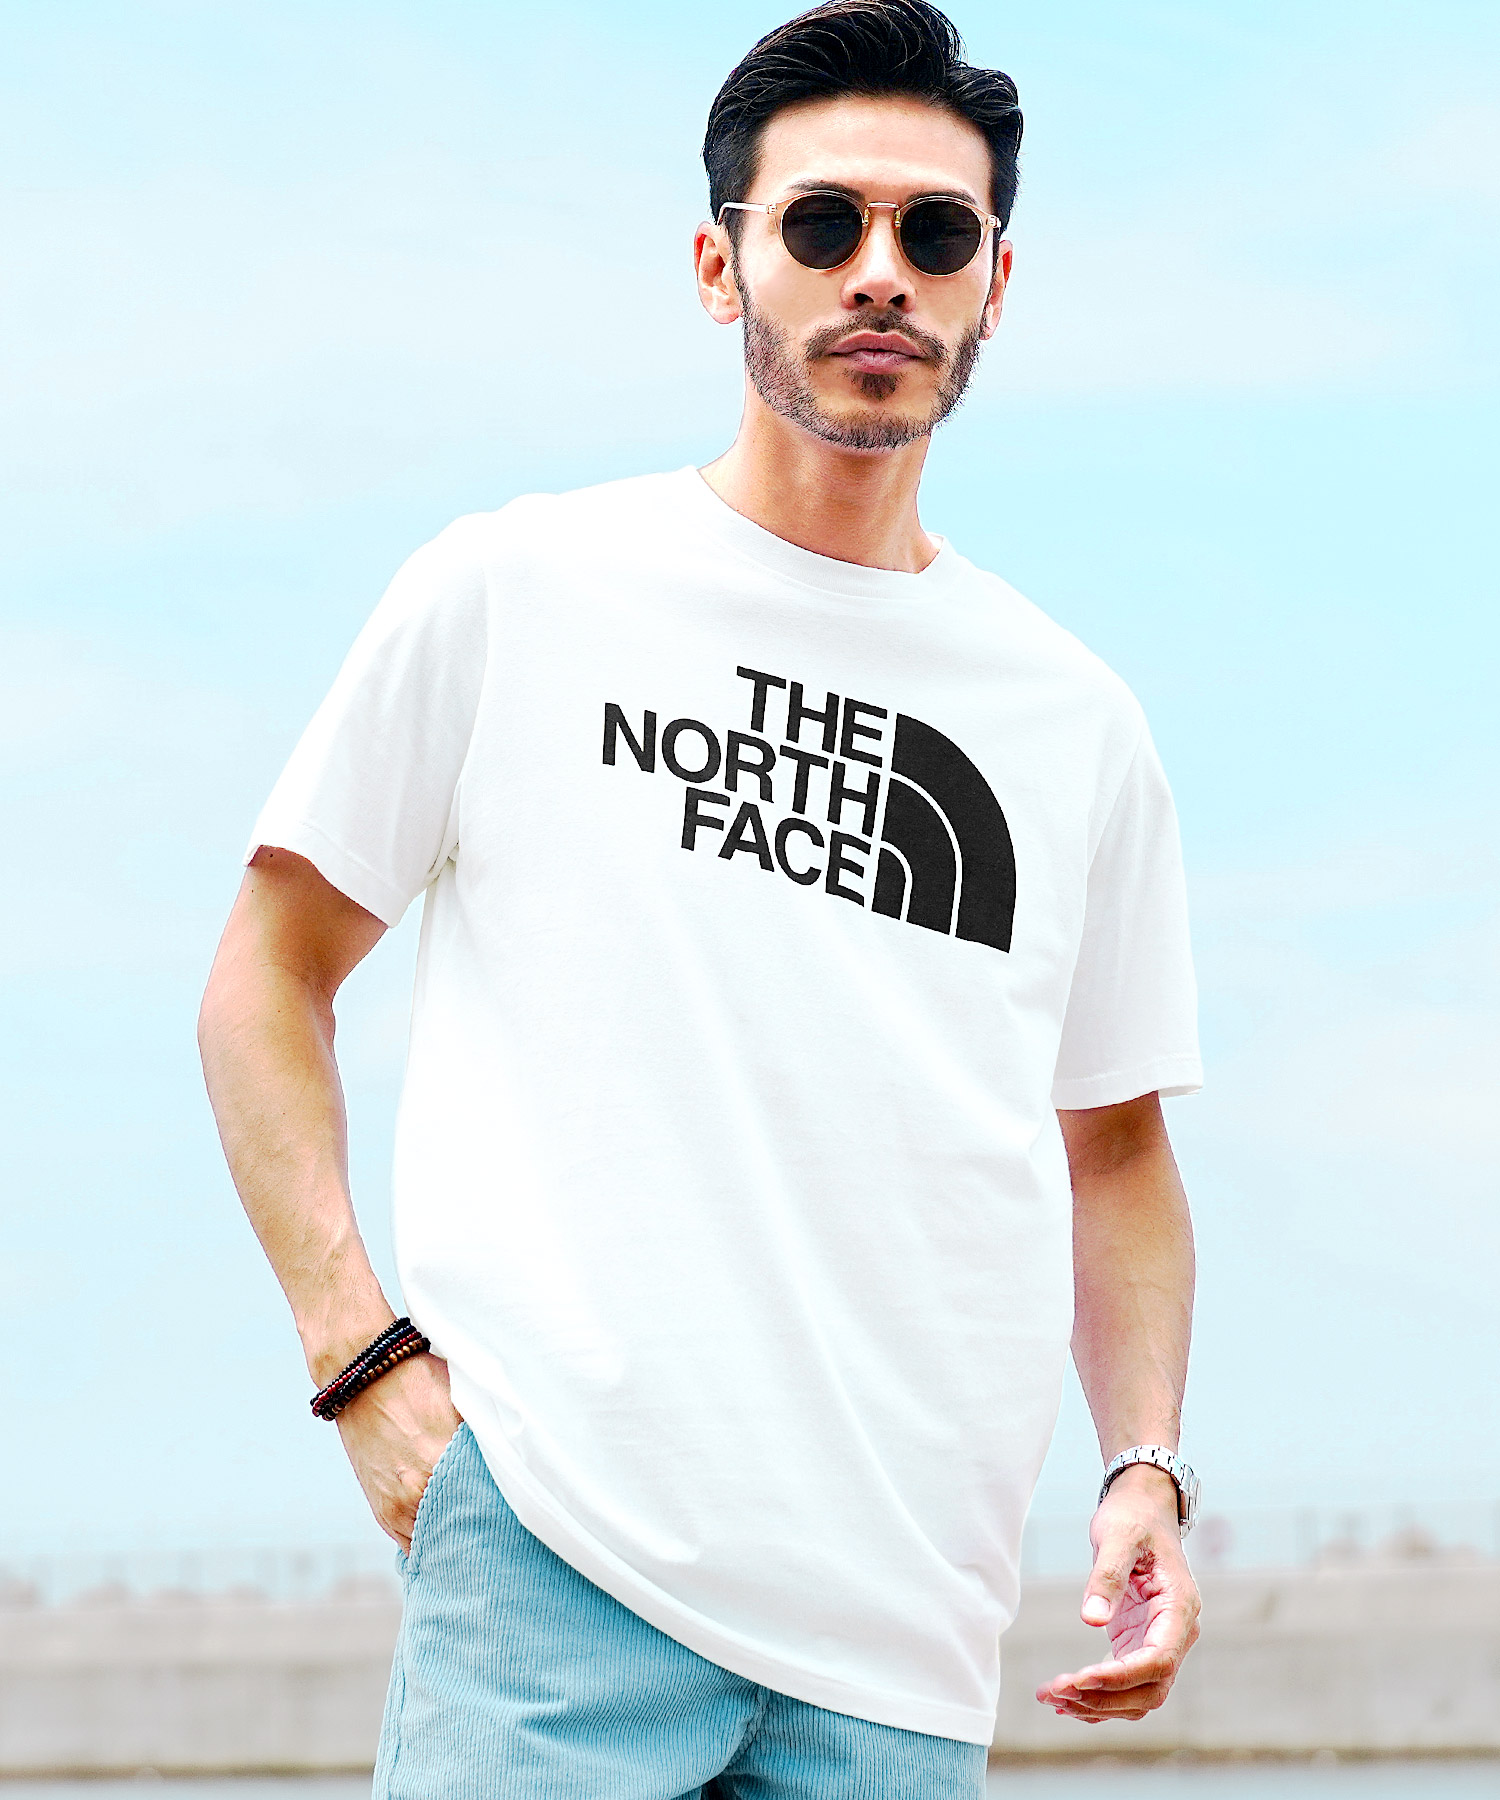 【クーポン対象外】THE NORTH FACE ノースフェイス Tシャツ メンズ トップス カットソ...